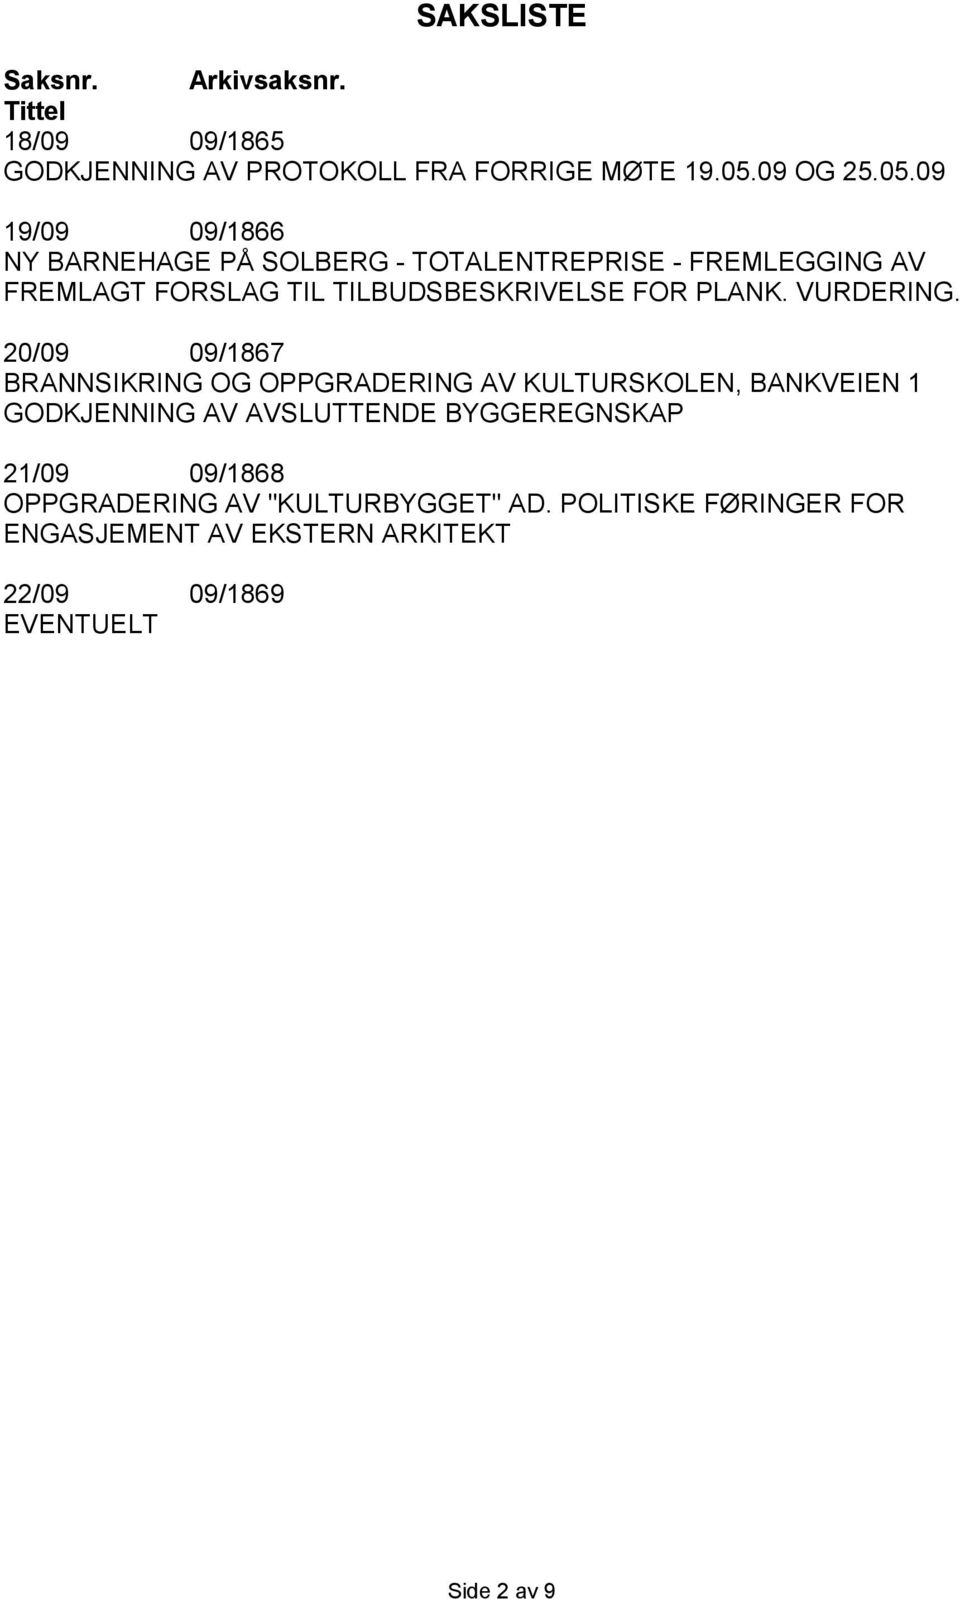 09 19/09 09/1866 NY BARNEHAGE PÅ SOLBERG - TOTALENTREPRISE - FREMLEGGING AV FREMLAGT FORSLAG TIL TILBUDSBESKRIVELSE FOR PLANK.